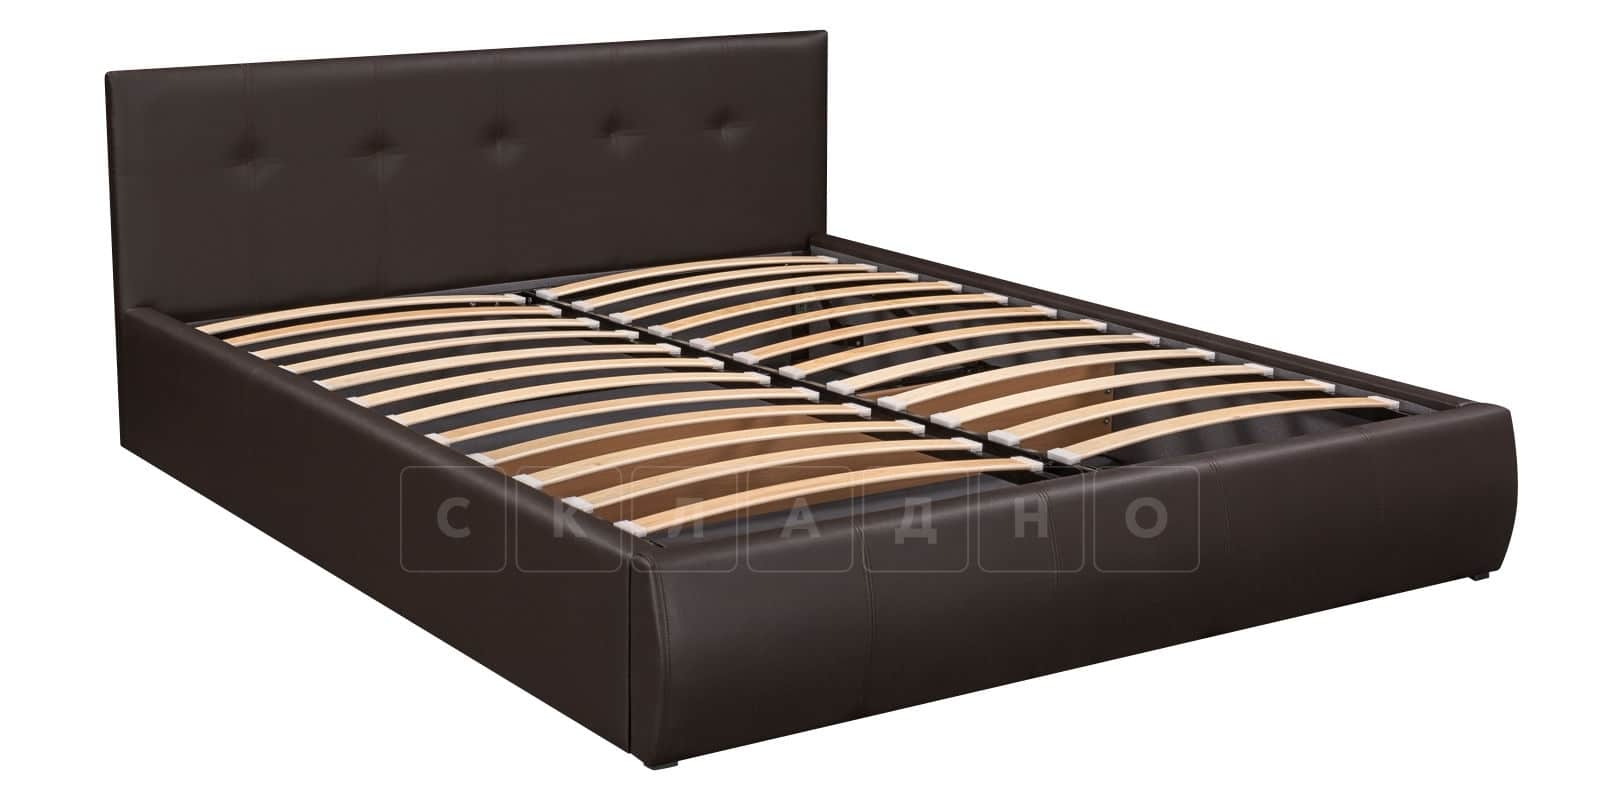 Мягкая кровать Афина 160 см экокожа коричневого цвета фото 5 | интернет-магазин Складно